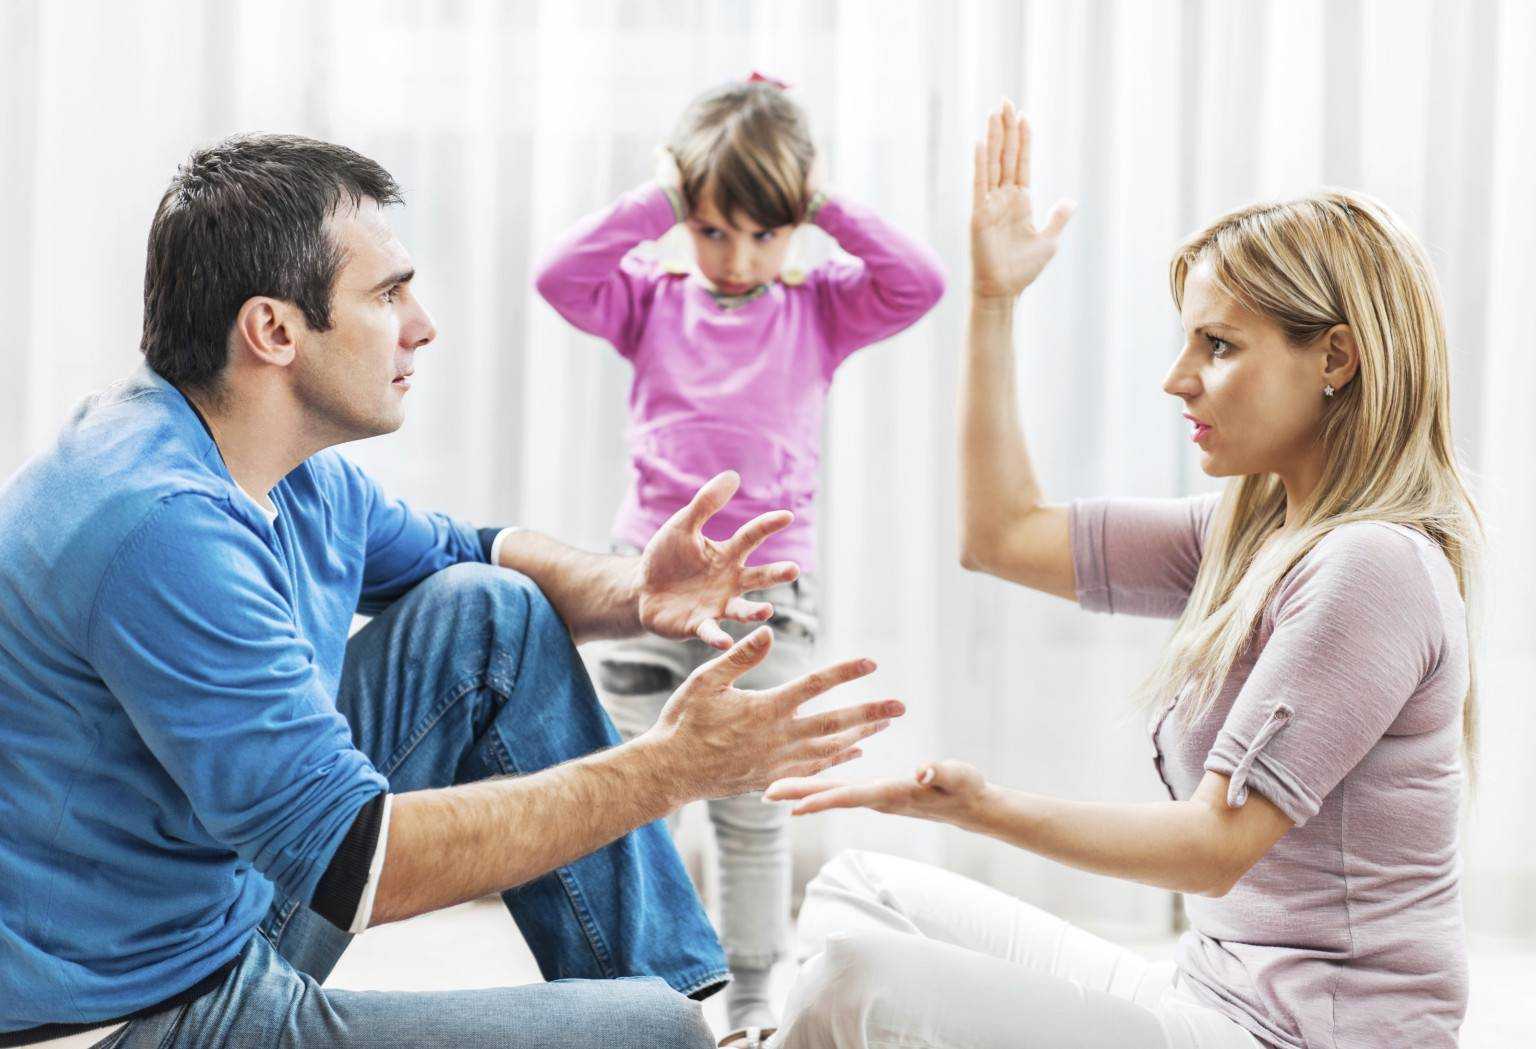 Разлад в семье: что делать: советы психологов как сохранить брак и перестать ссориться?  причины разногласий между мужем и женой